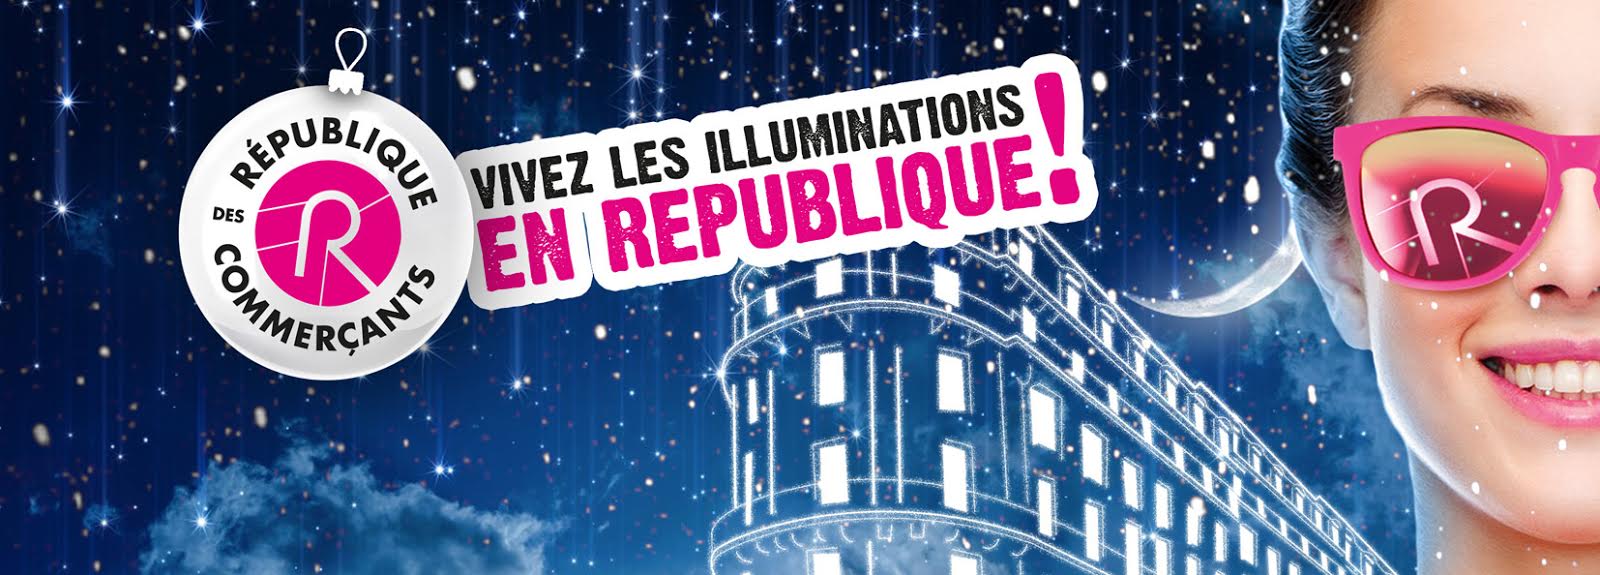 illuminations-2015-banner-republique